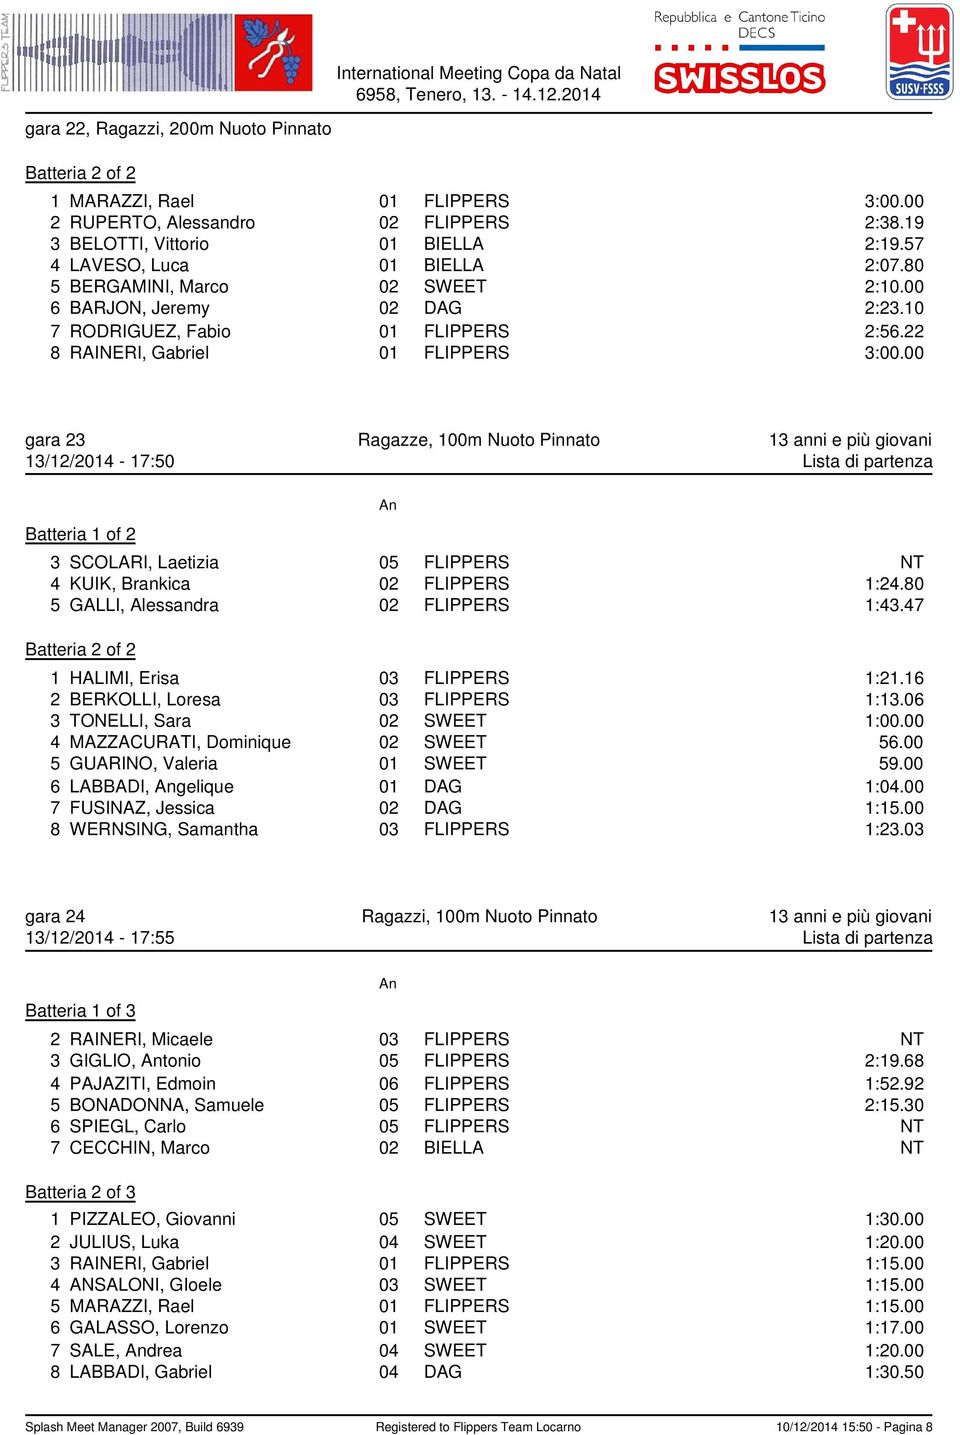 00 gara 23 Ragazze, 100m Nuoto Pinnato 13 anni e più giovani 13/12/2014-17:50 Lista di partenza 3 SCOLARI, Laetizia 05 FLIPPERS NT 4 KUIK, Brankica 02 FLIPPERS 1:24.